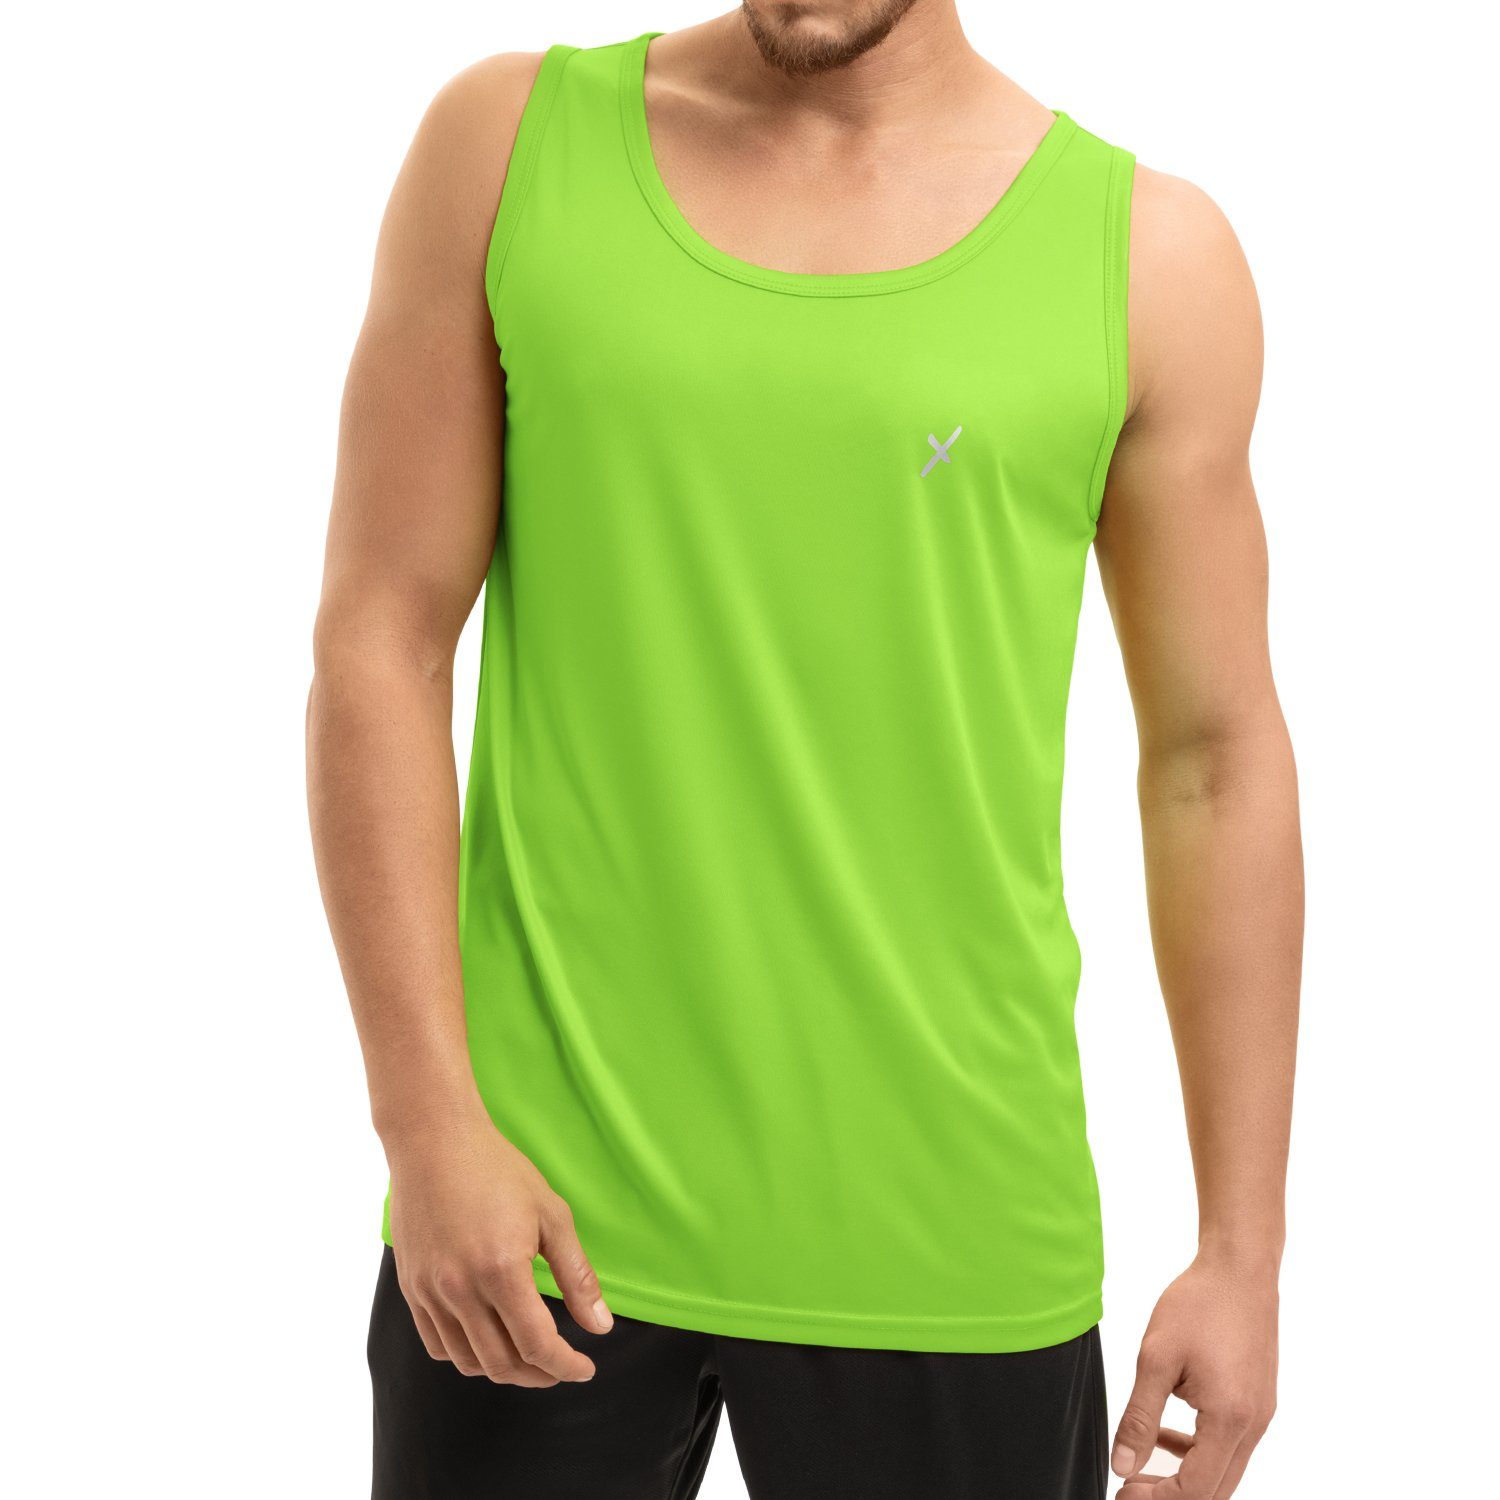 CFLEX Trainingsshirt Herren Sport Shirt Tanktop Fitness Collection Grün Sportswear